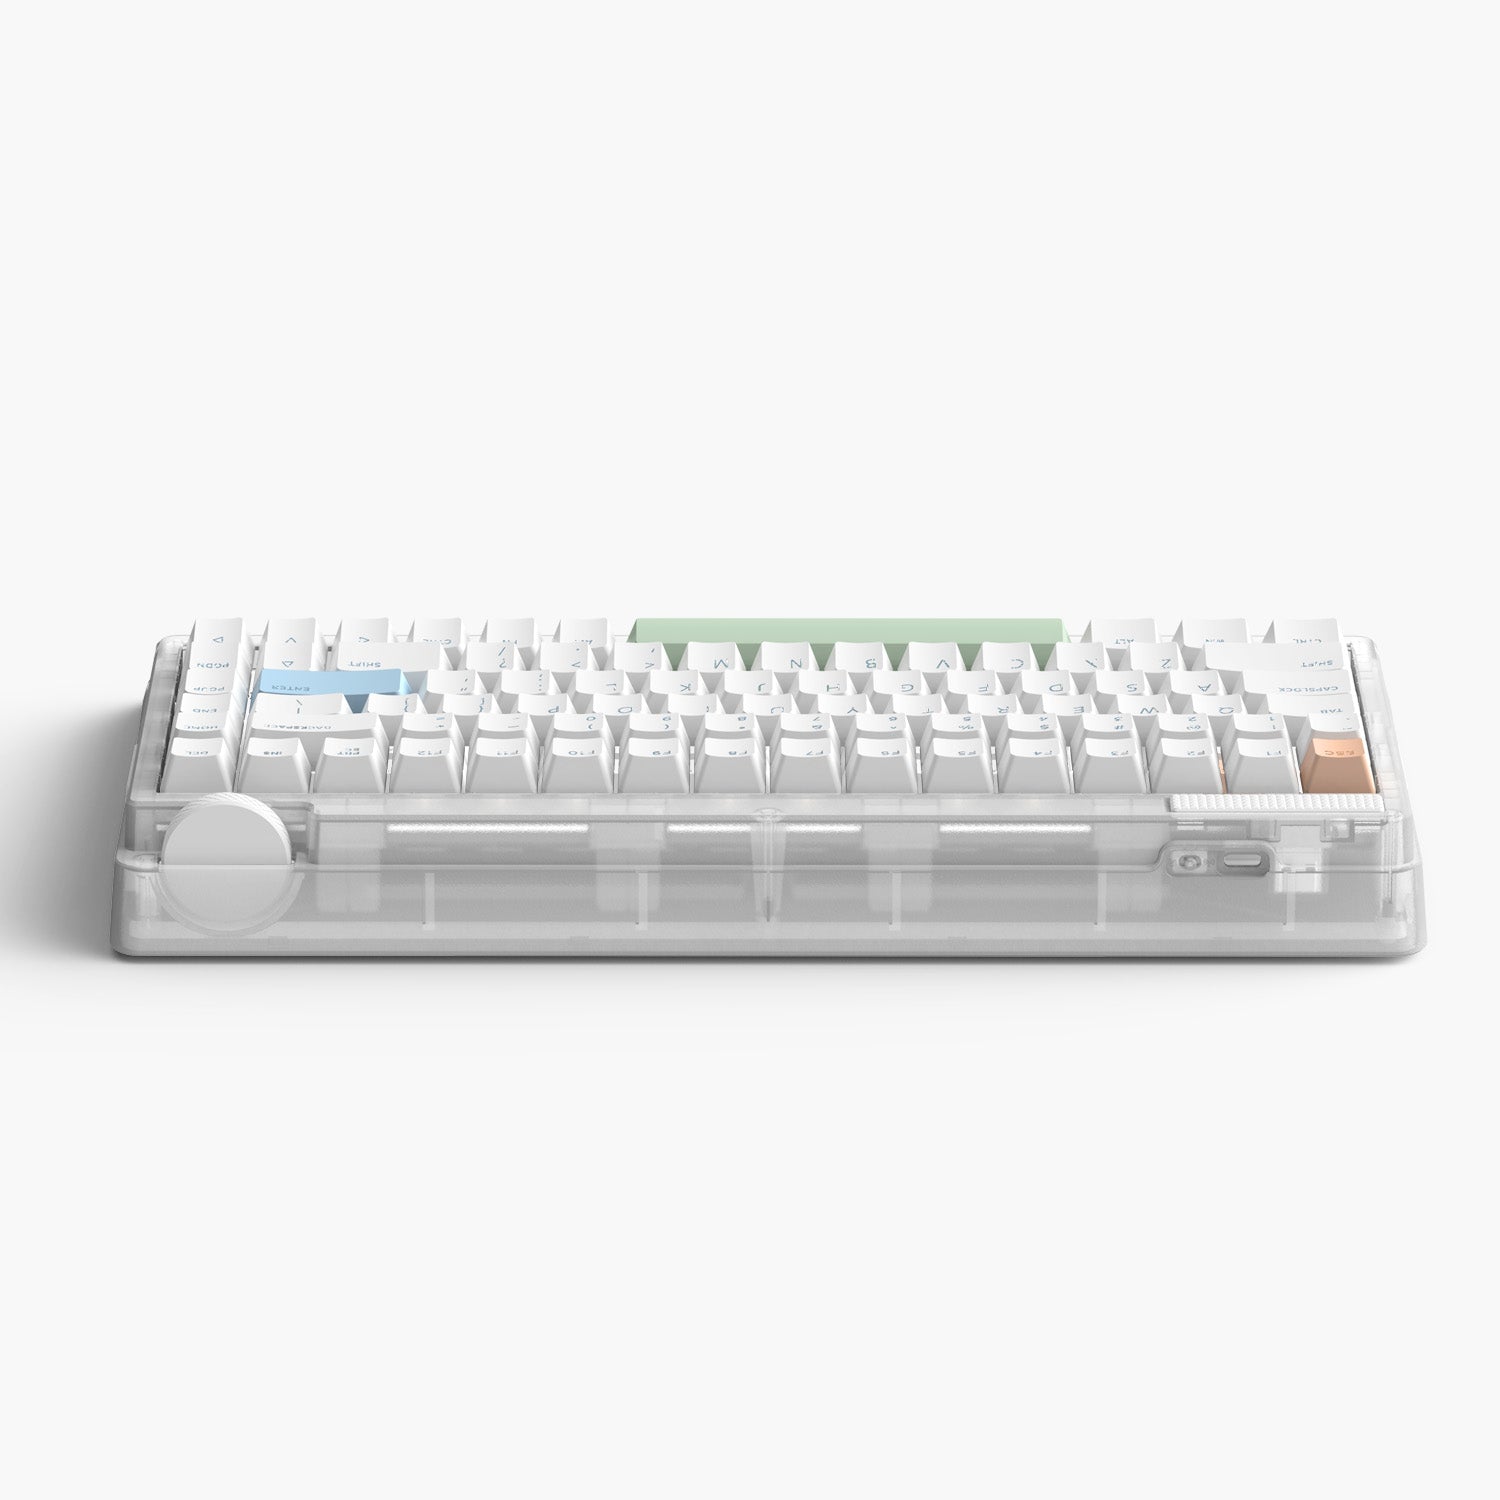 MT80 White Mechanical Keyboard